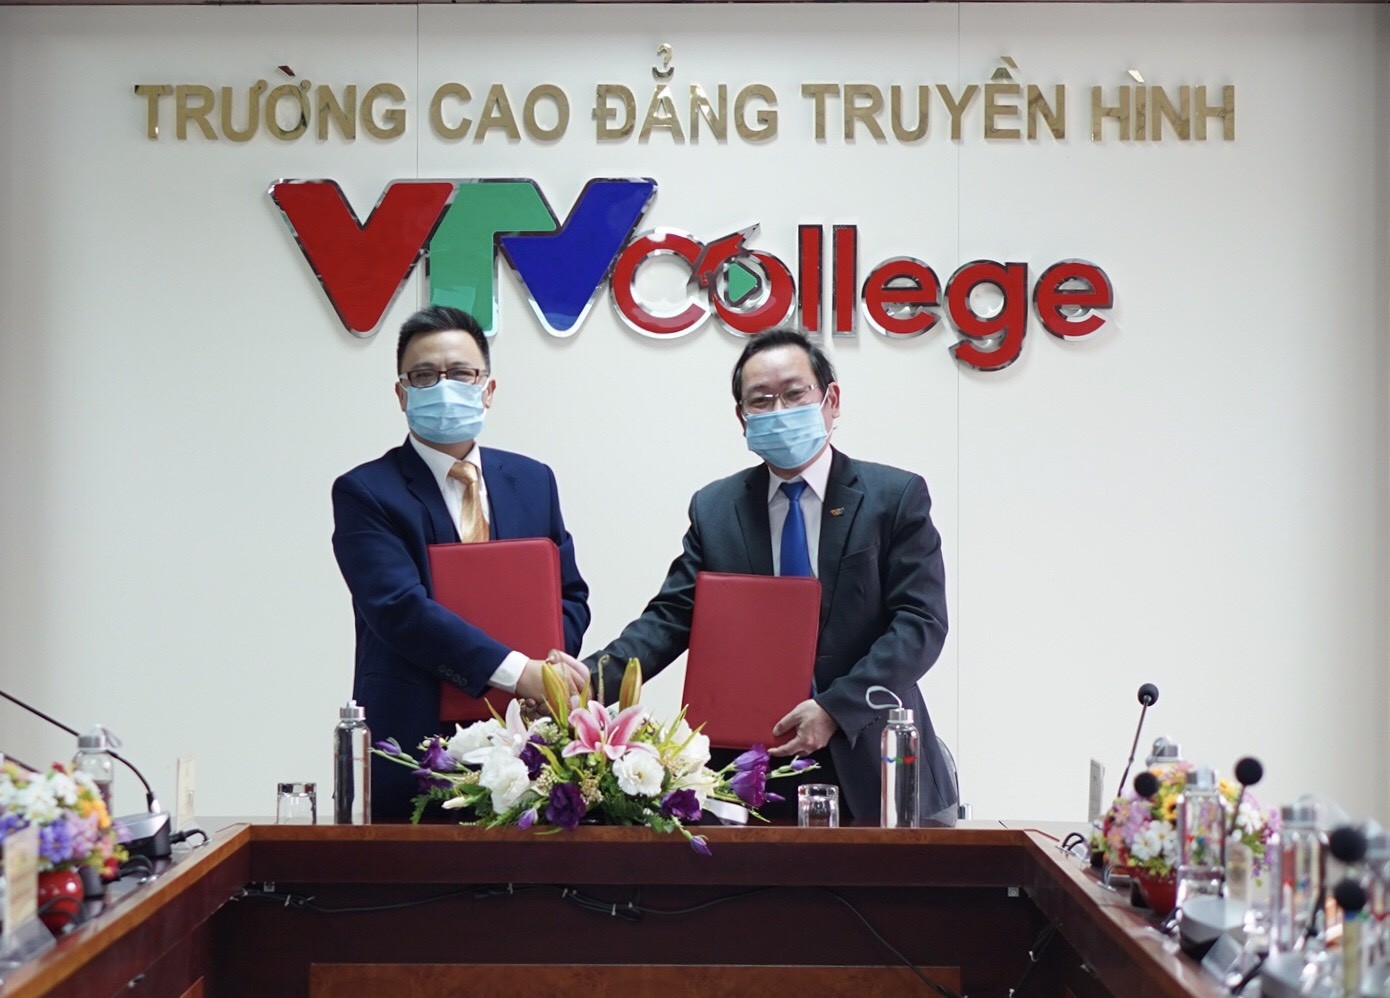 TVTV College: Ký kết Biên bản ghi nhớ hợp tác đào tạo nguồn nhân lực